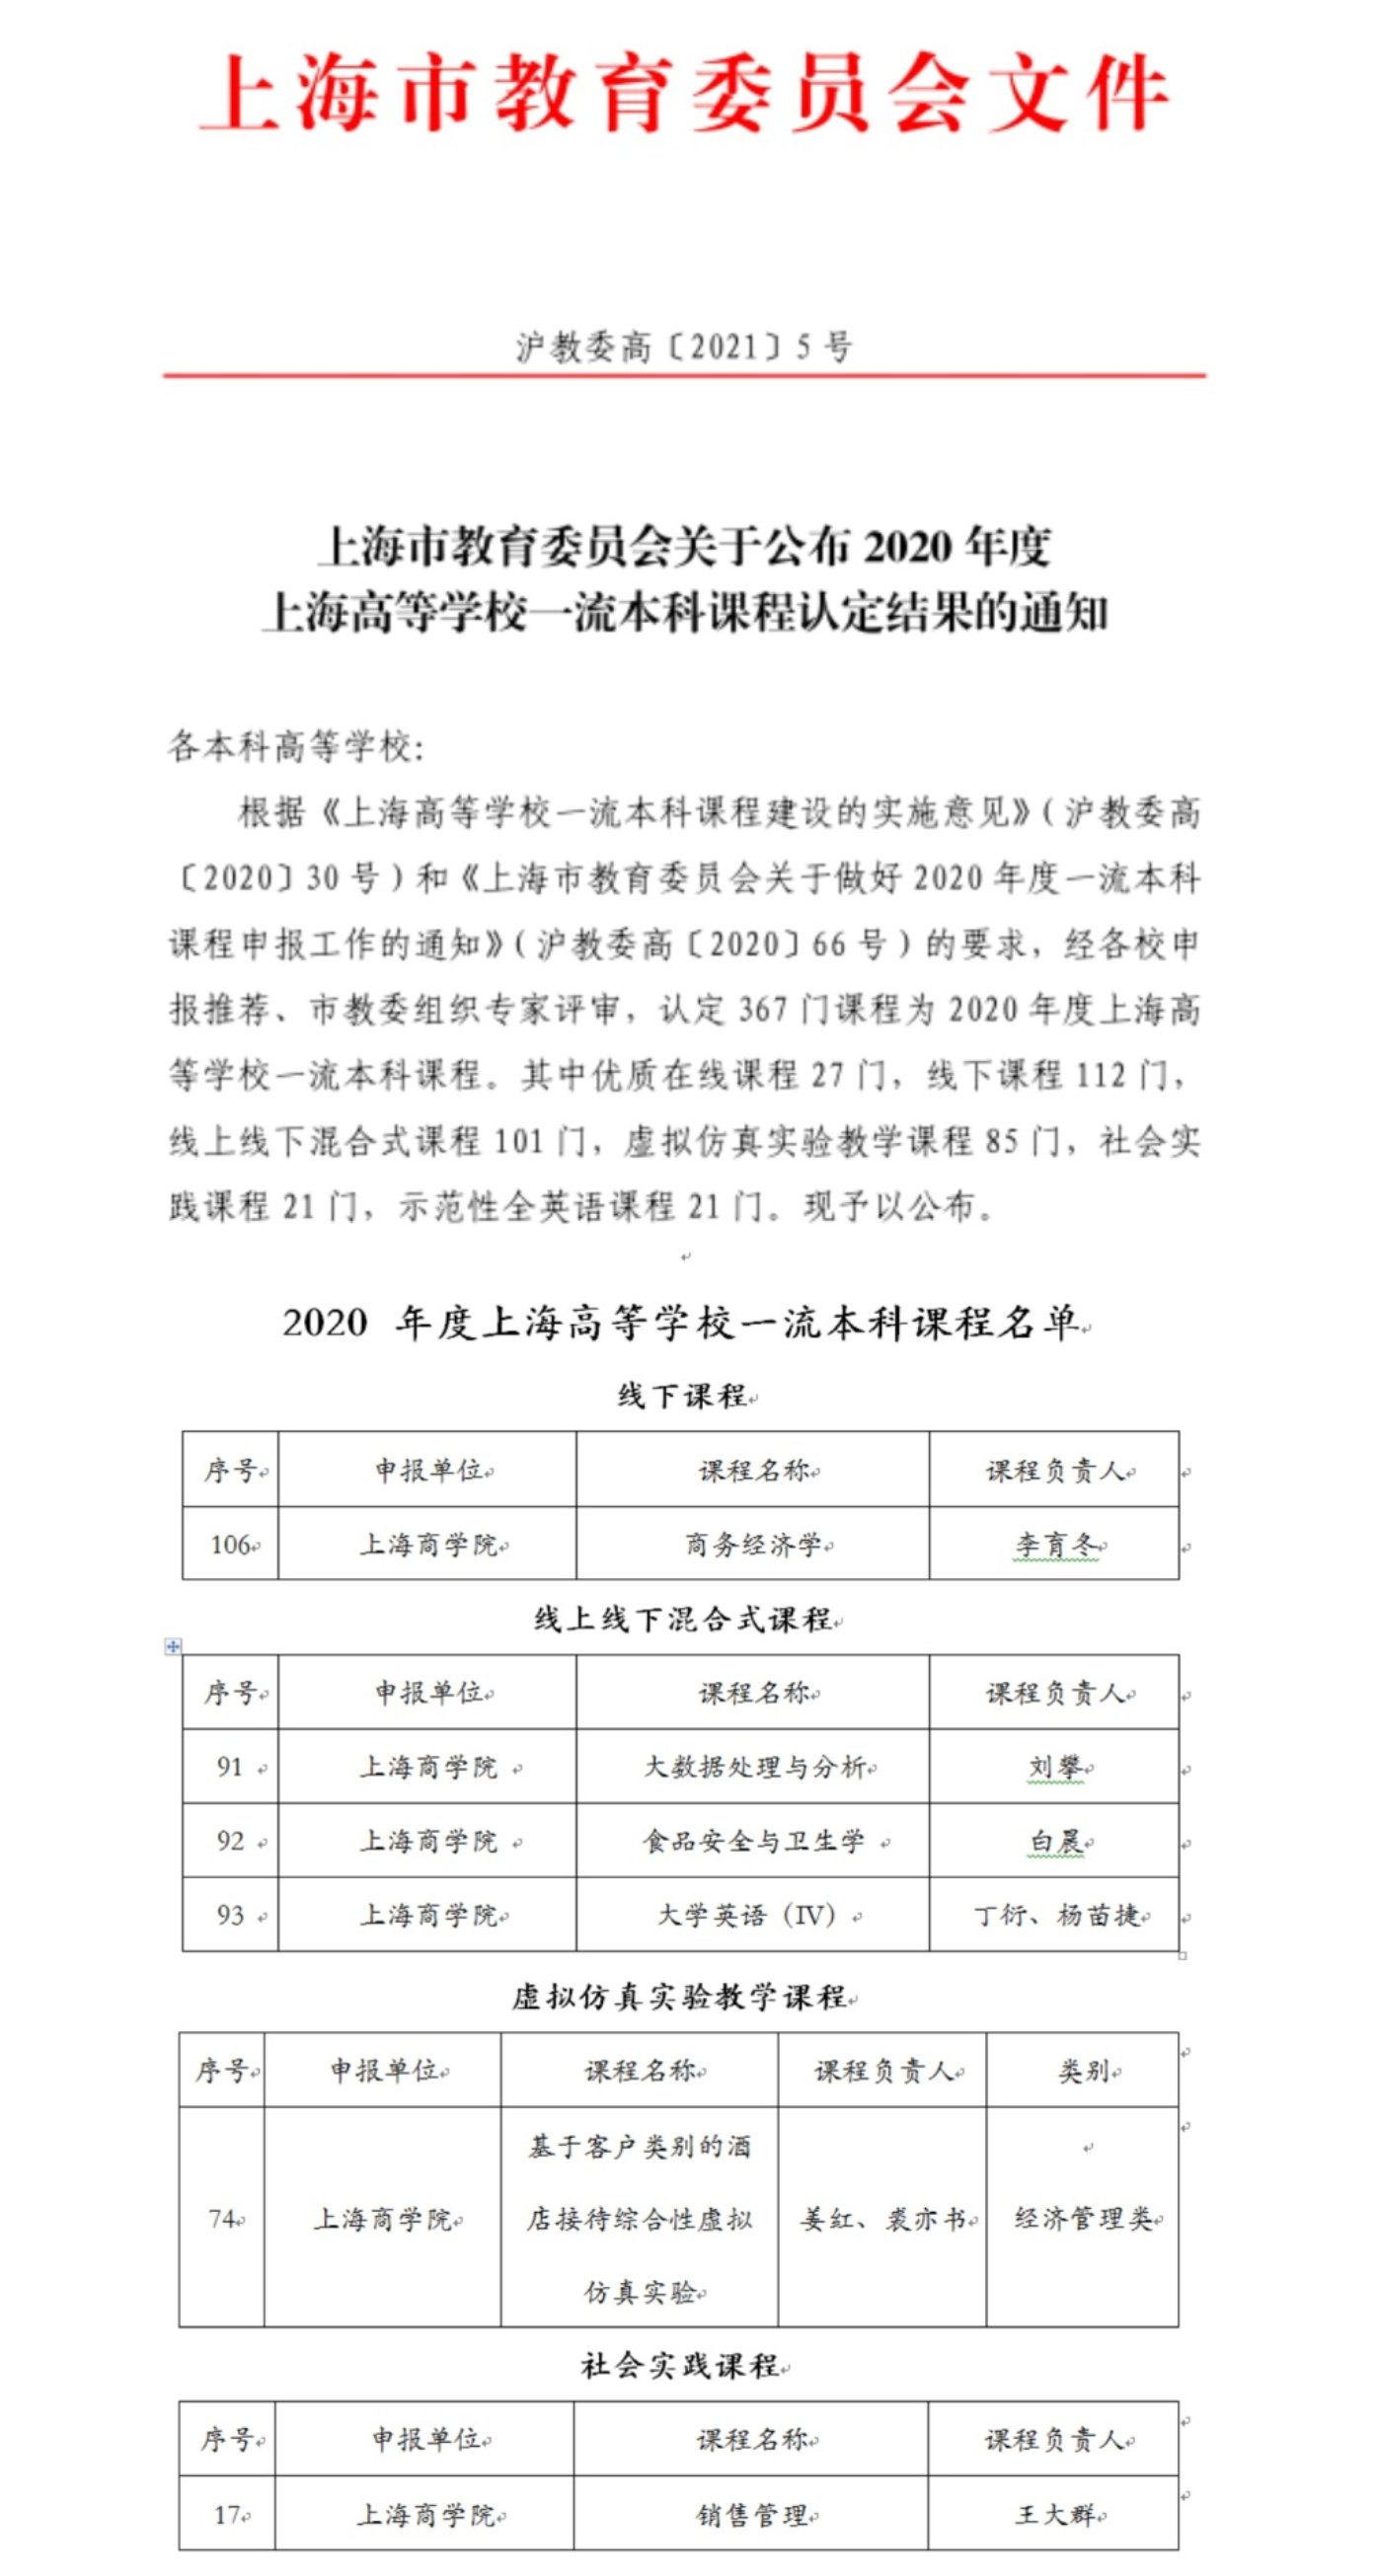 图为上海市教委文件